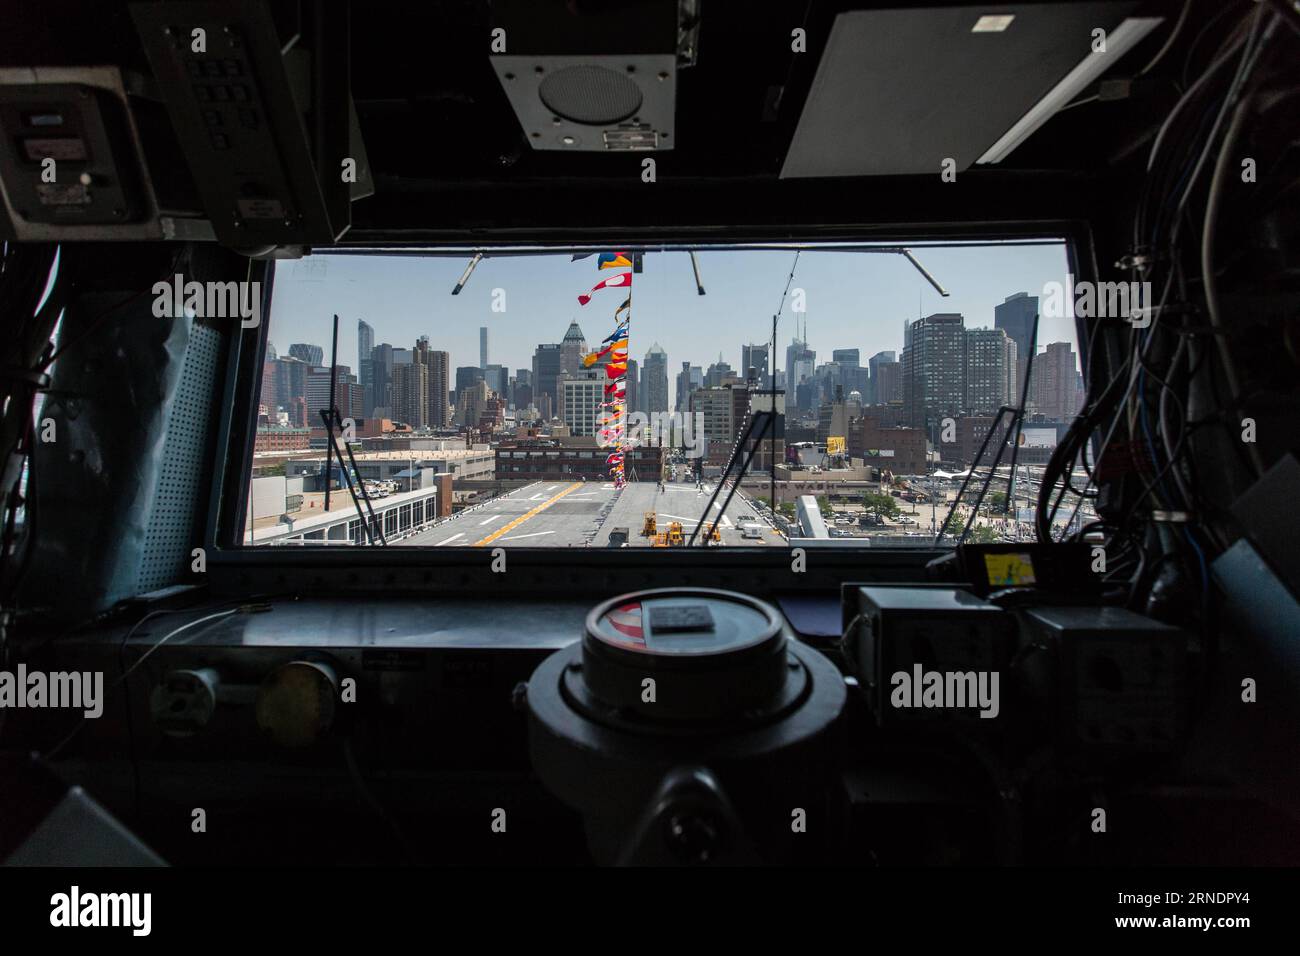 Das Foto vom 27. Mai 2016 zeigt die Skyline von Manhattan aus dem Brückenfenster der USS Bataan (LHD-5), einem amphibischen Angriffsschiff der Wasp-Klasse, in Manhattan während der 28. Jährlichen New York Fleet Week in New York, USA. Die New York Fleet Week findet vom 25. Mai bis 30. Mai statt, wo hunderte Soldaten der Streitkräfte New York City im Rahmen der Gedenkfeiern besuchen. ) US-NEW YORK-FLEET WEEK-USS BATAAN LixMuzi PUBLICATIONxNOTxINxCHN Foto aufgenommen AM 27 2016. Mai zeigt die Skyline-Seen von Manhattan vom Brückenfenster der USS Bataan LHD 5 Wasp Class Stockfoto